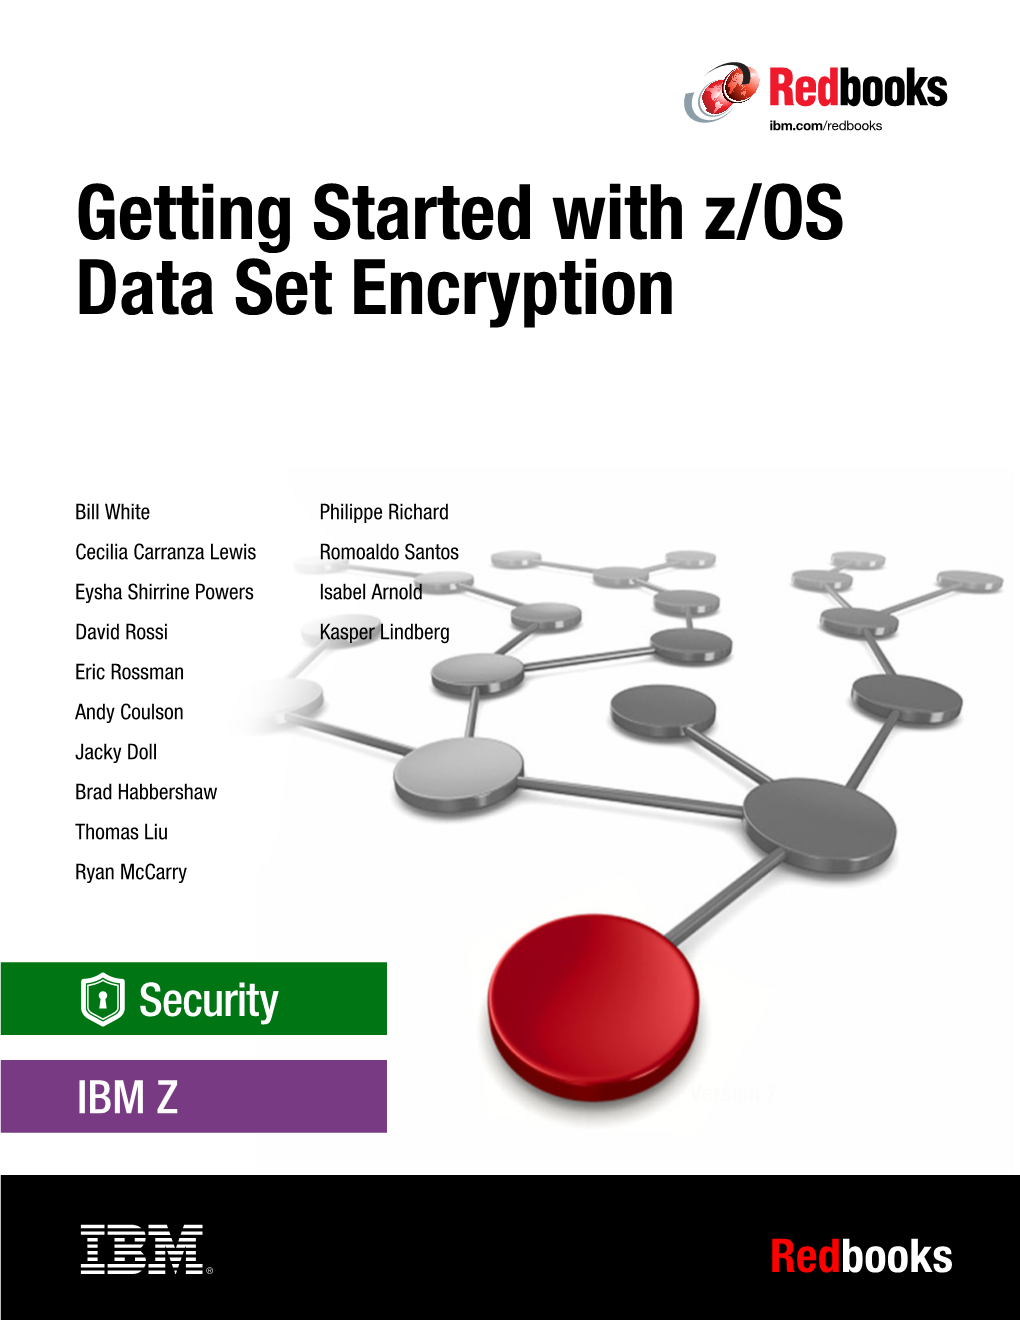 Introducing IBM Z/OS Data Set Encryption